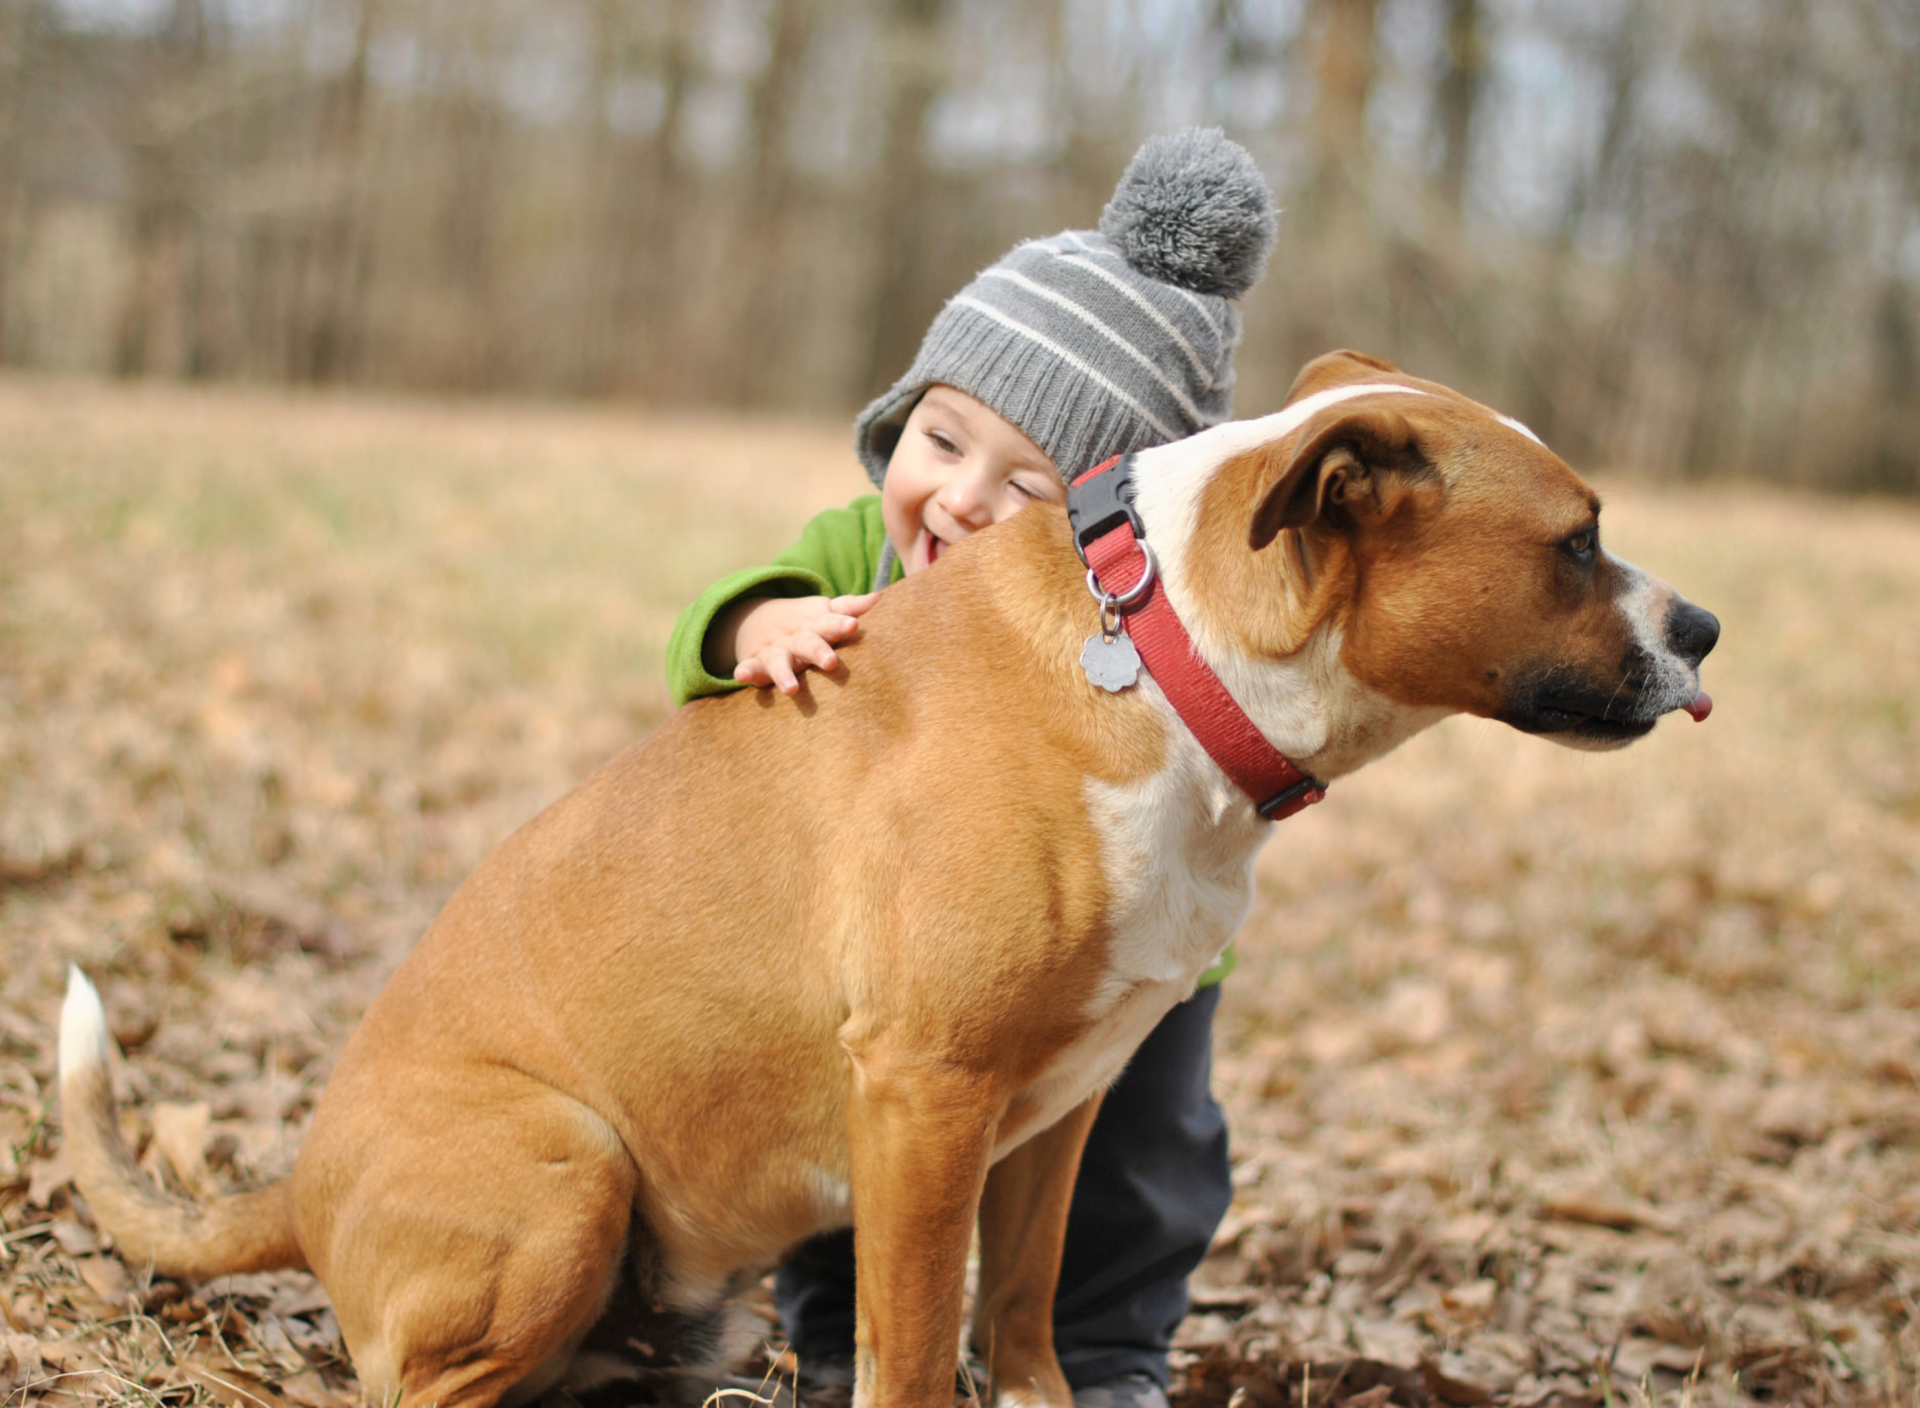 Обои Child With His Dog Friend 1920x1408